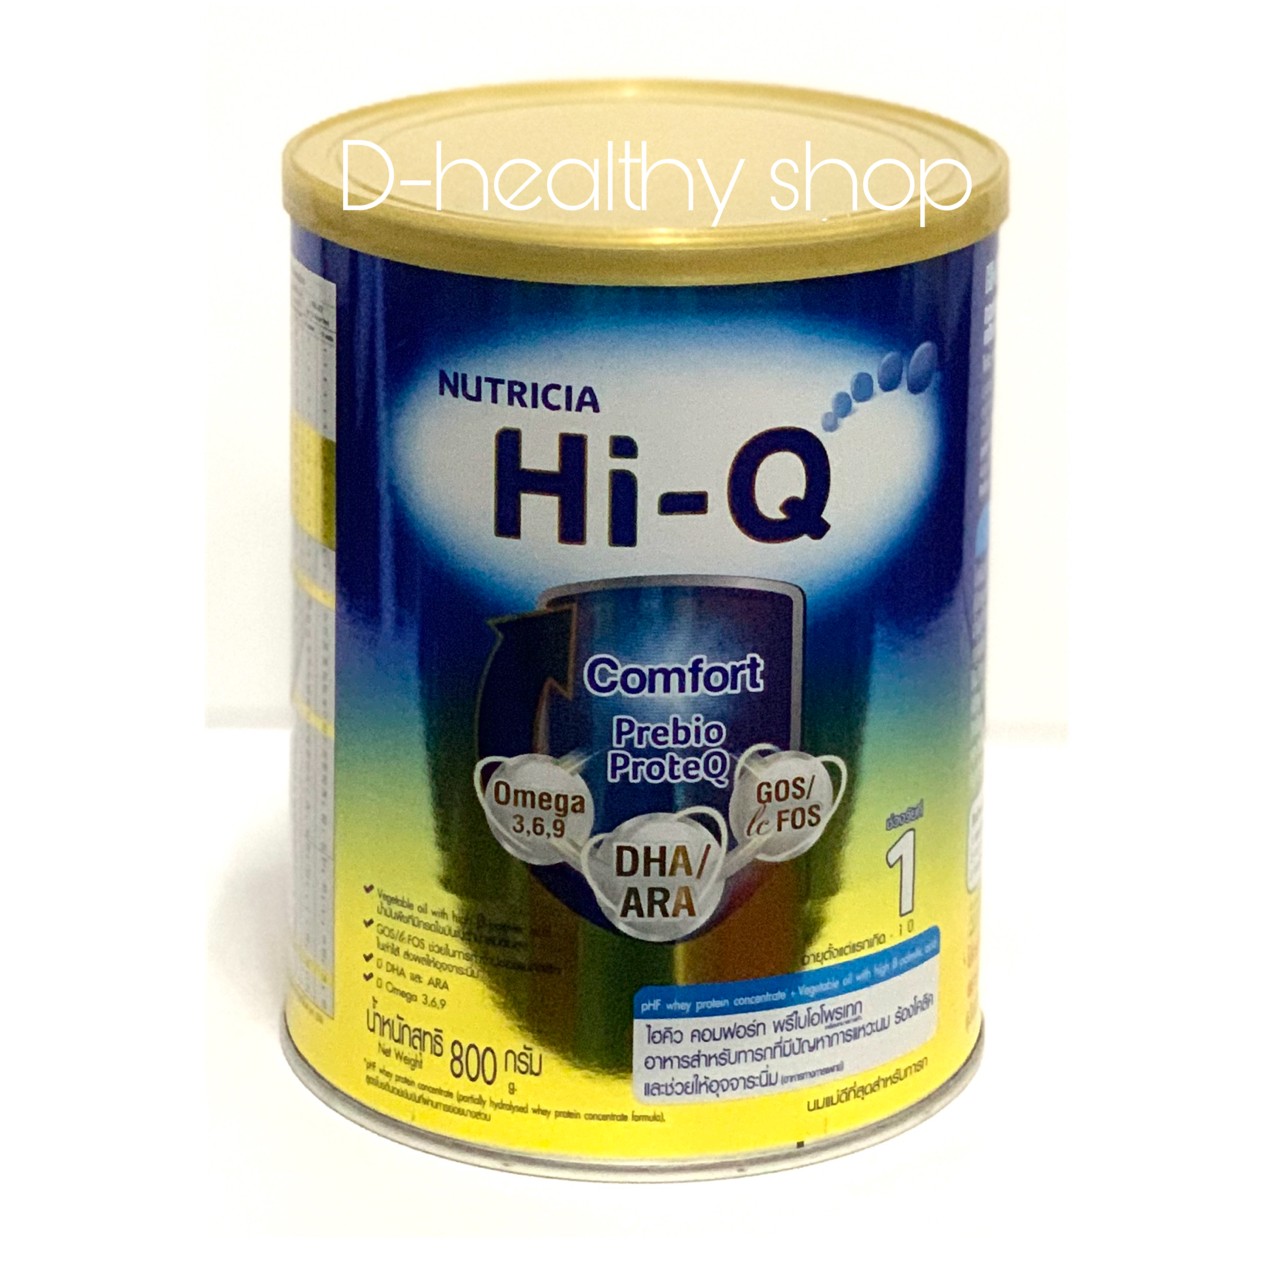 นมผง Hi-Q Comfort ไอคิว คอมฟอร์ท พรีไบโอโพรเทก ช่วงวัยที่ 1 ขนาด 800 กรัม (1กระป๋อง)